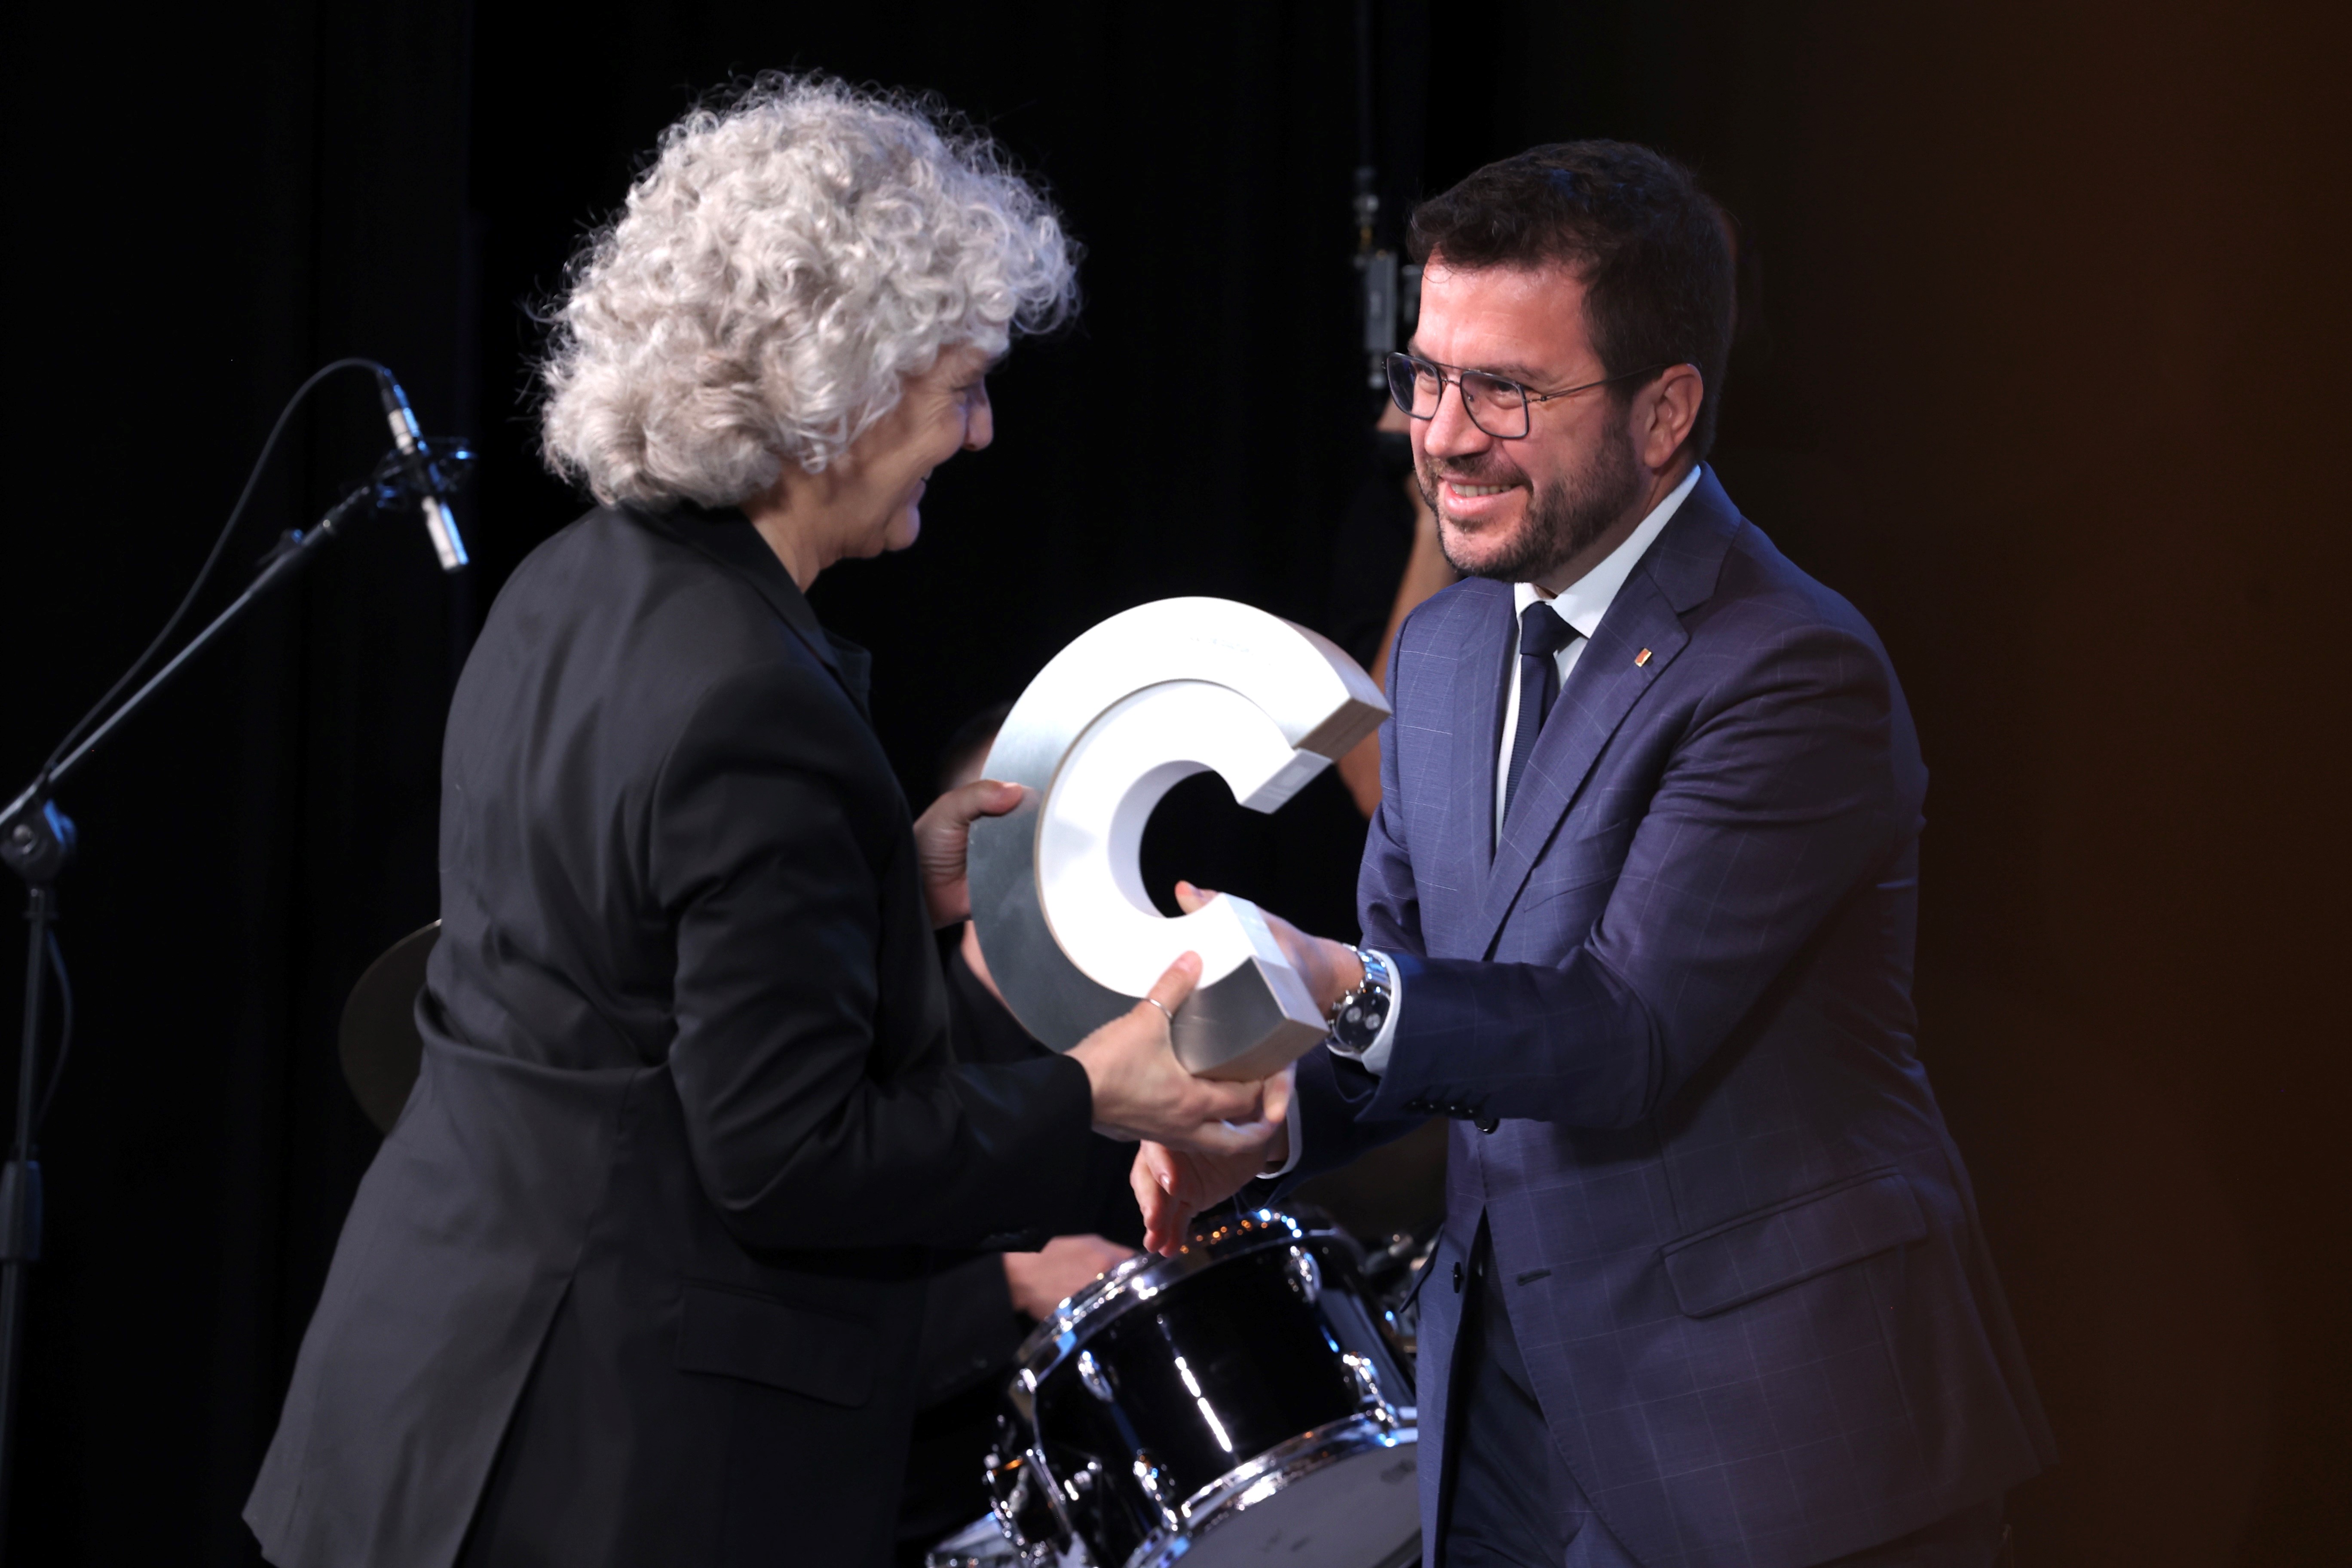 El president Pere Aragonès fa entrega del premi CoNCA a la cantant Mayte Martín. Fotografia: Rubén Moreno